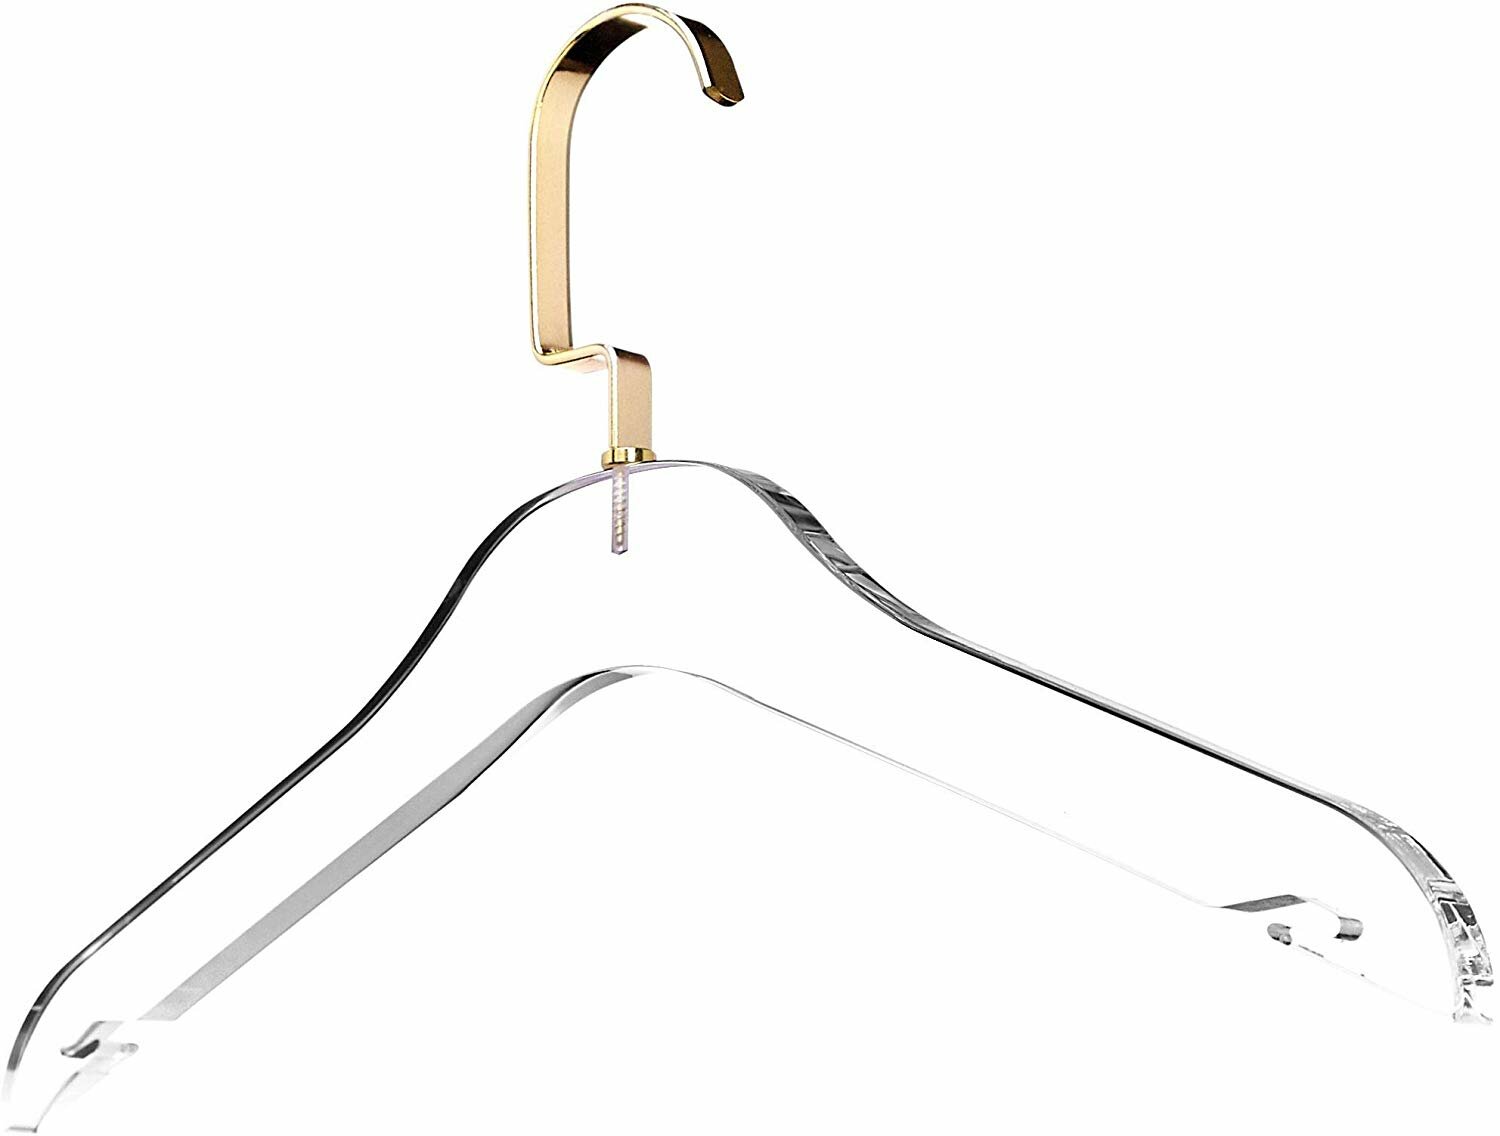 Neaties Standard Plastic Hangers with Notches – Neaties Hangers